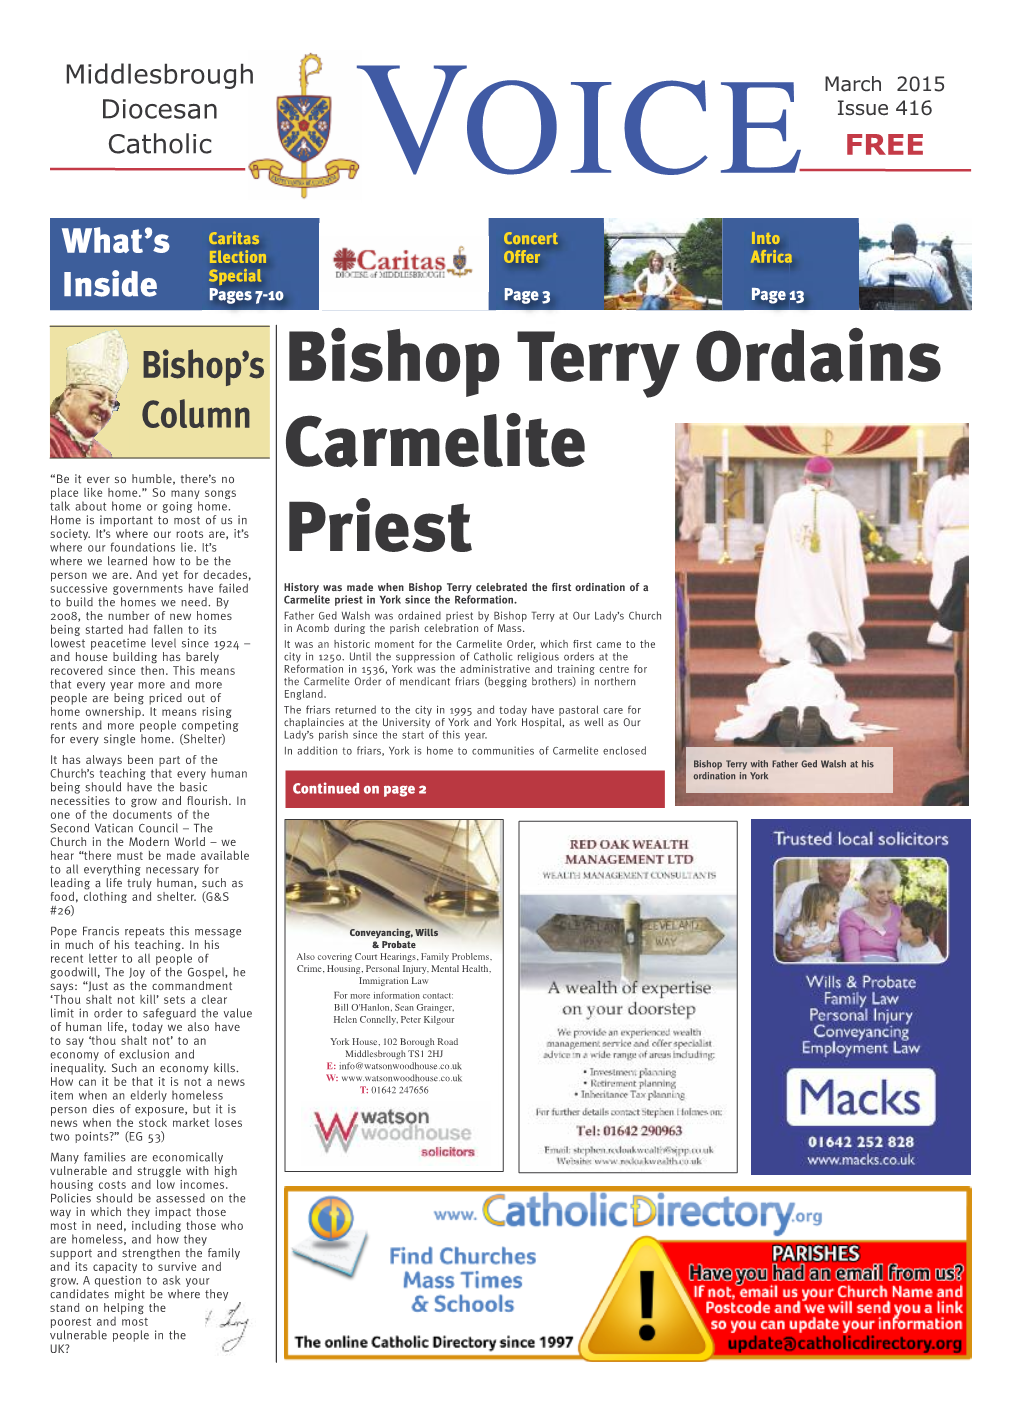 Bishop Terry Ordains Carmelite Priest